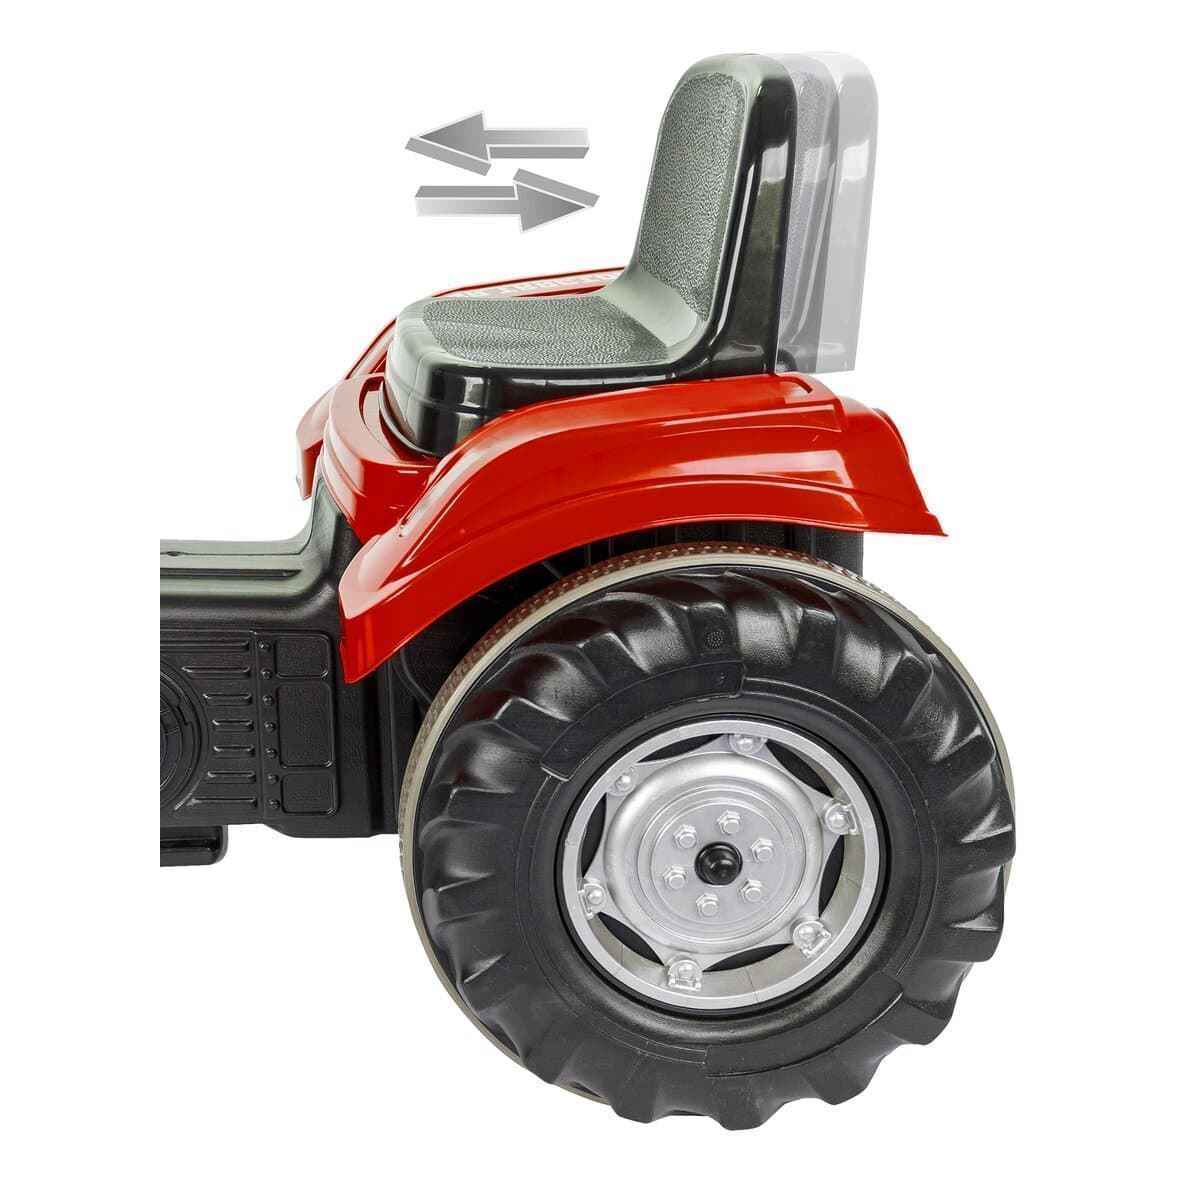 Tractor de batería 12v rojo - Imagen 5